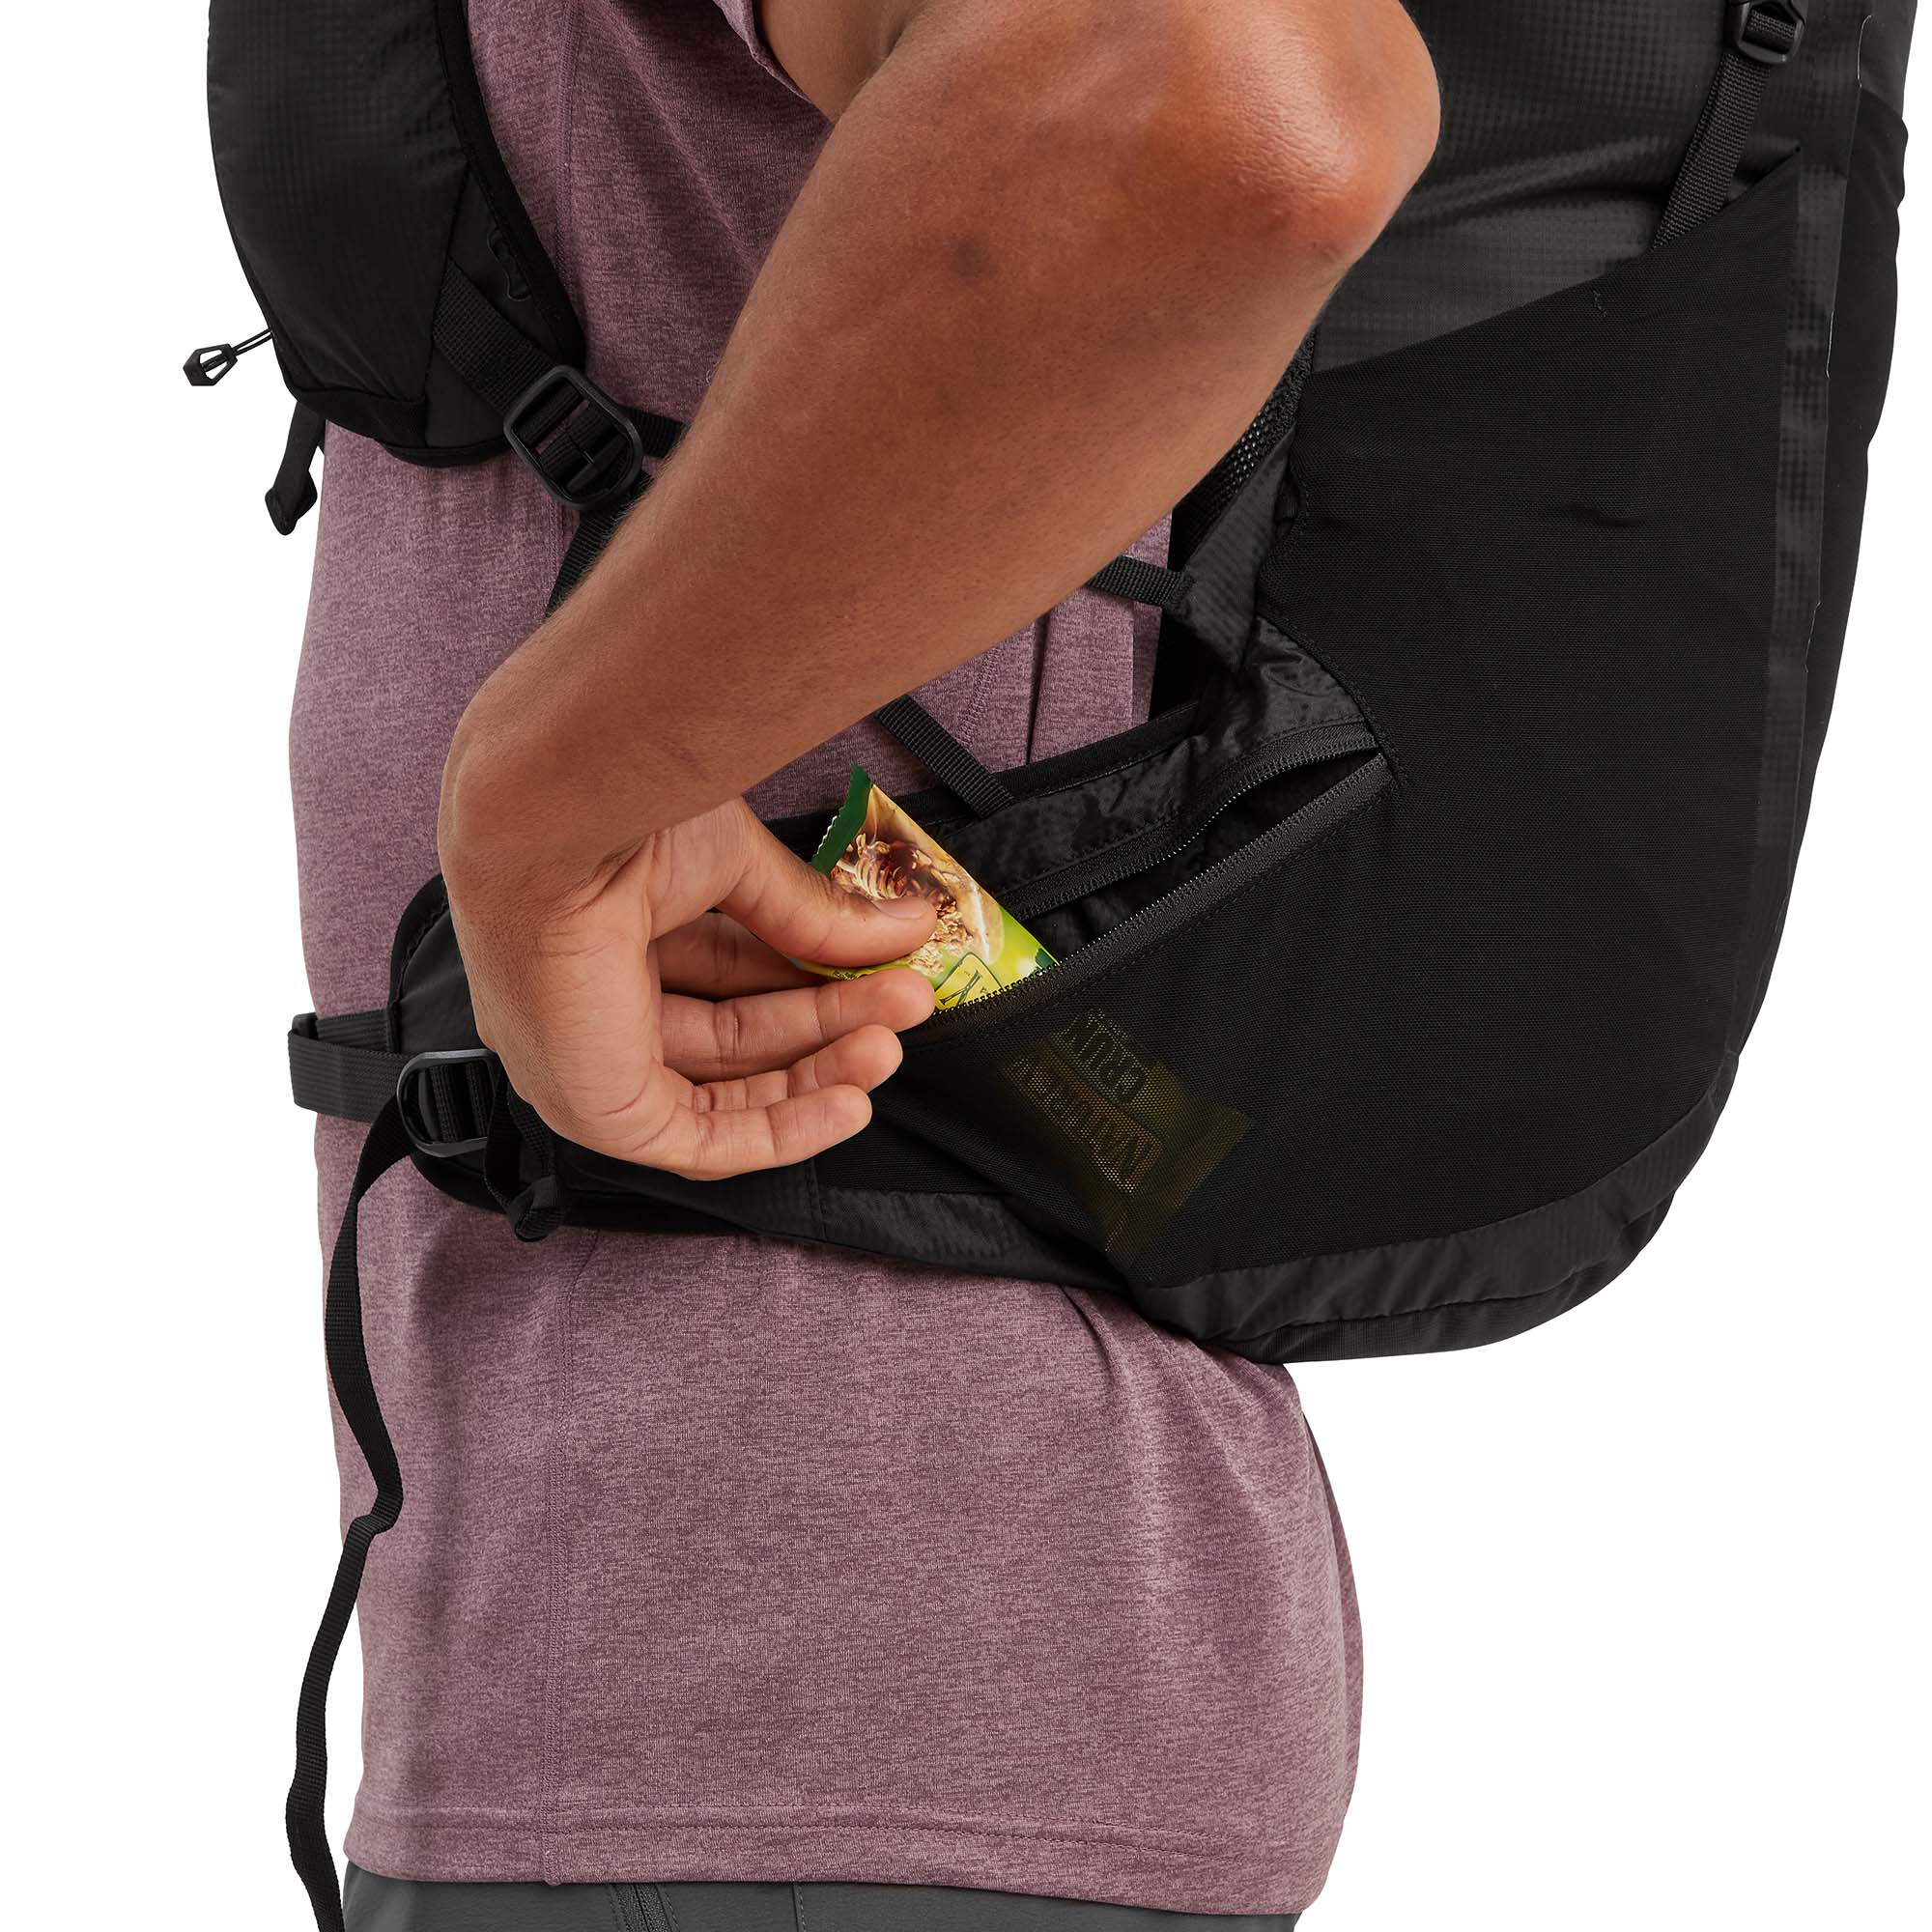 Montane Trailblazer 25L Trekking Backpack